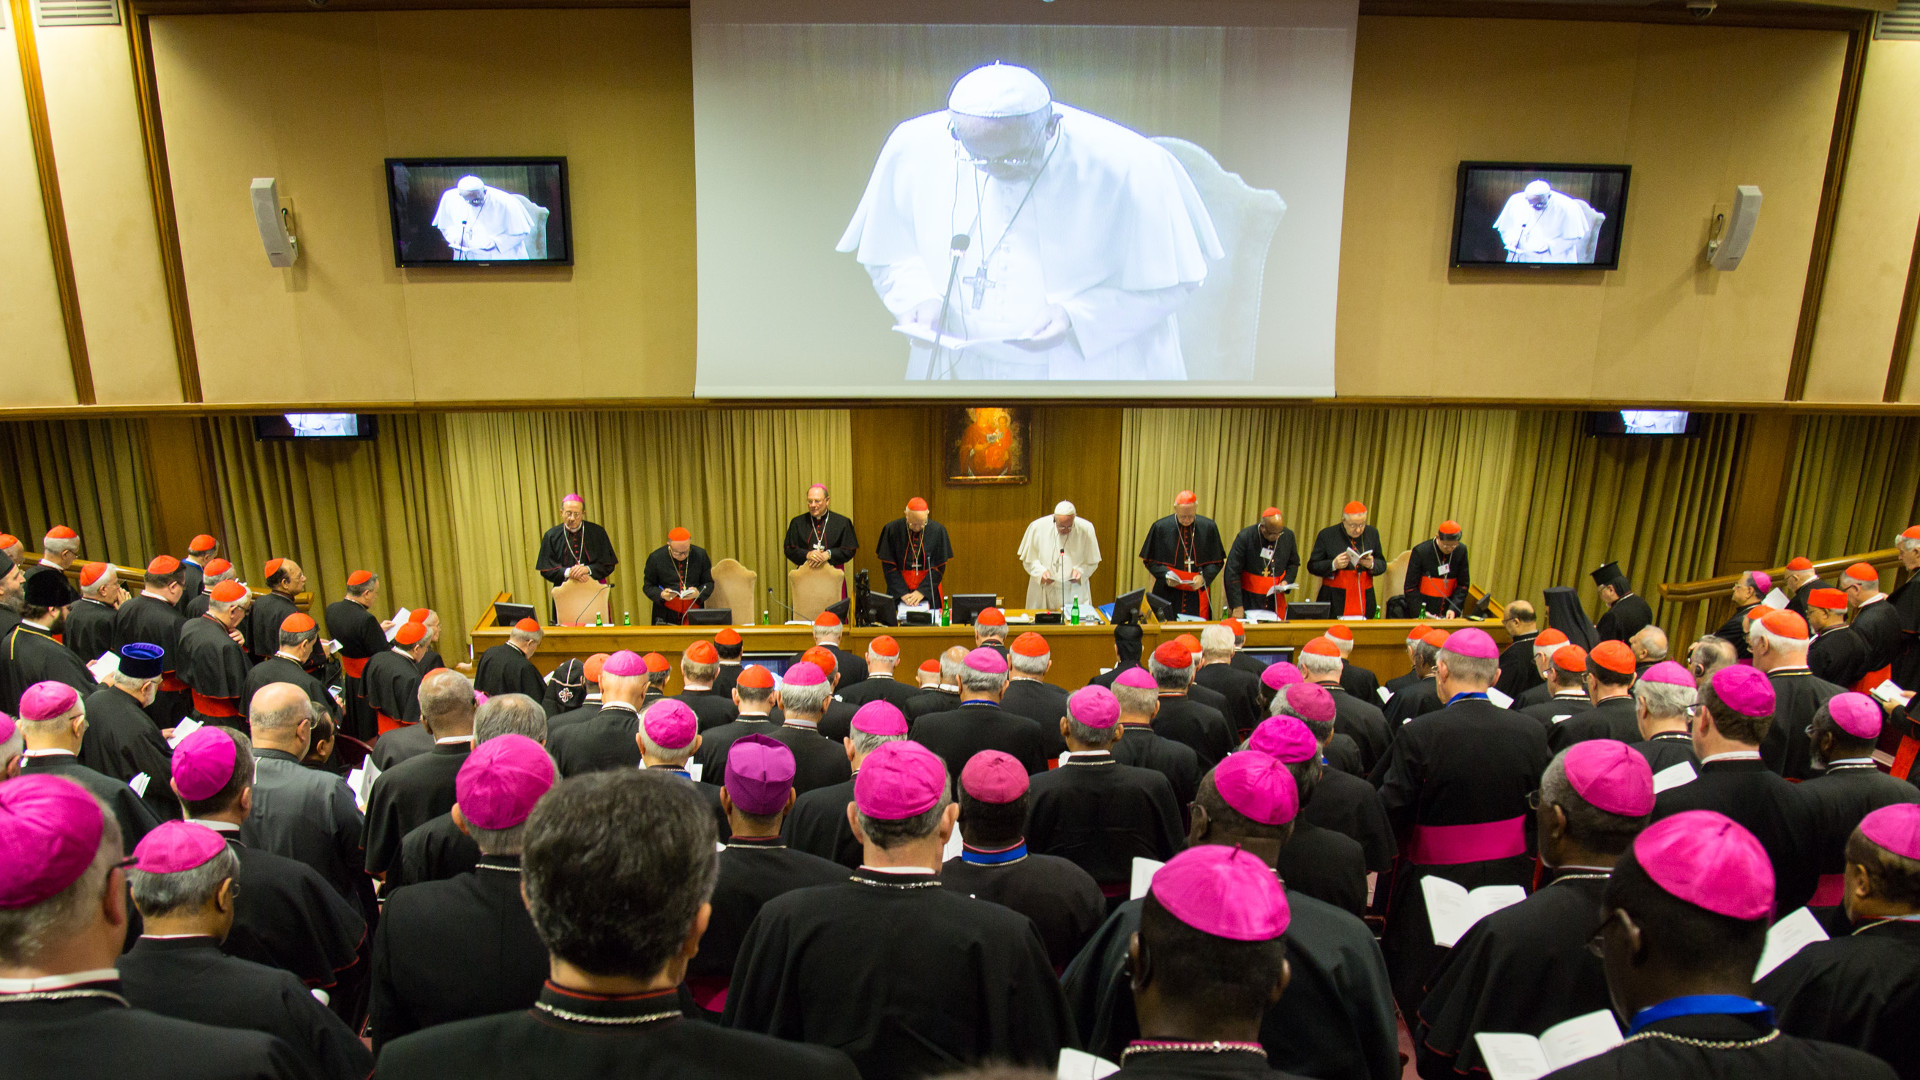 Bischofssynode und Papst im Gebet